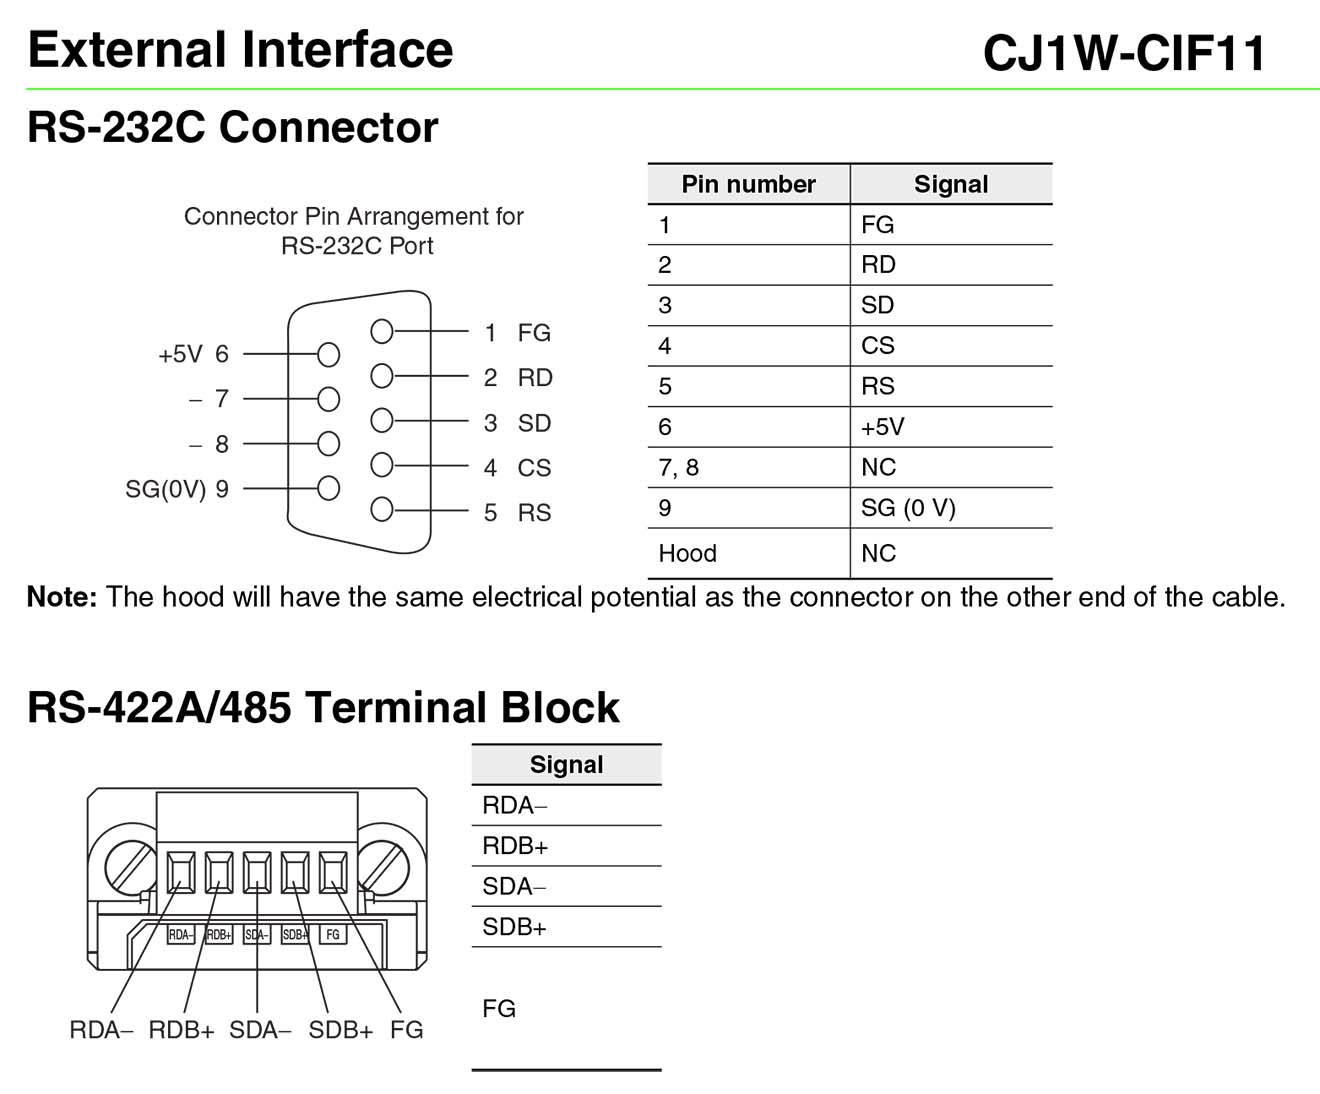 CJ1W-CIF11 Card module chuyển đổi truyền thông RS232 sang RS422/RS485